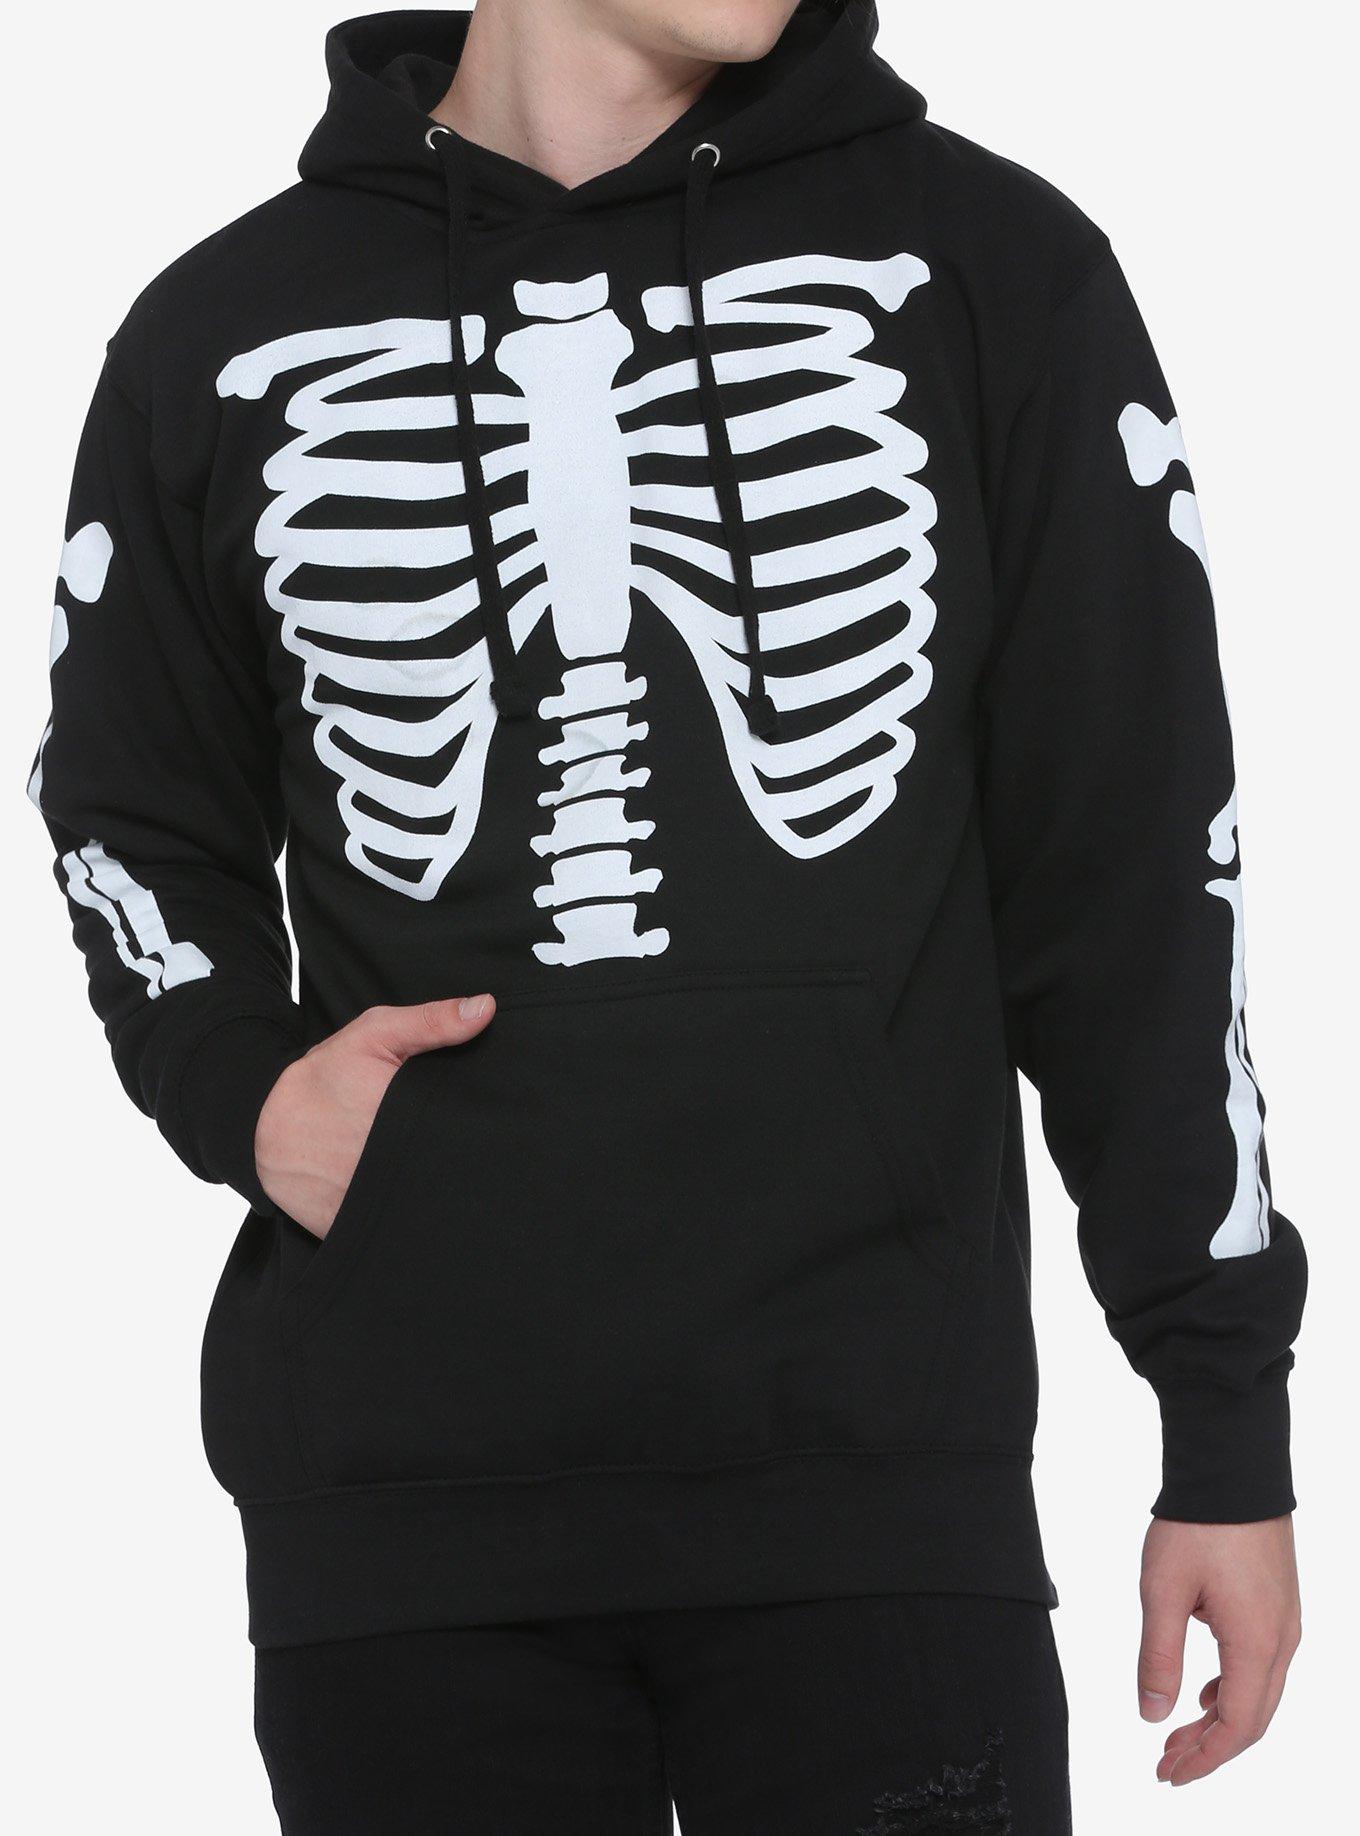 Adult Black & Bone Skeleton Hoodie